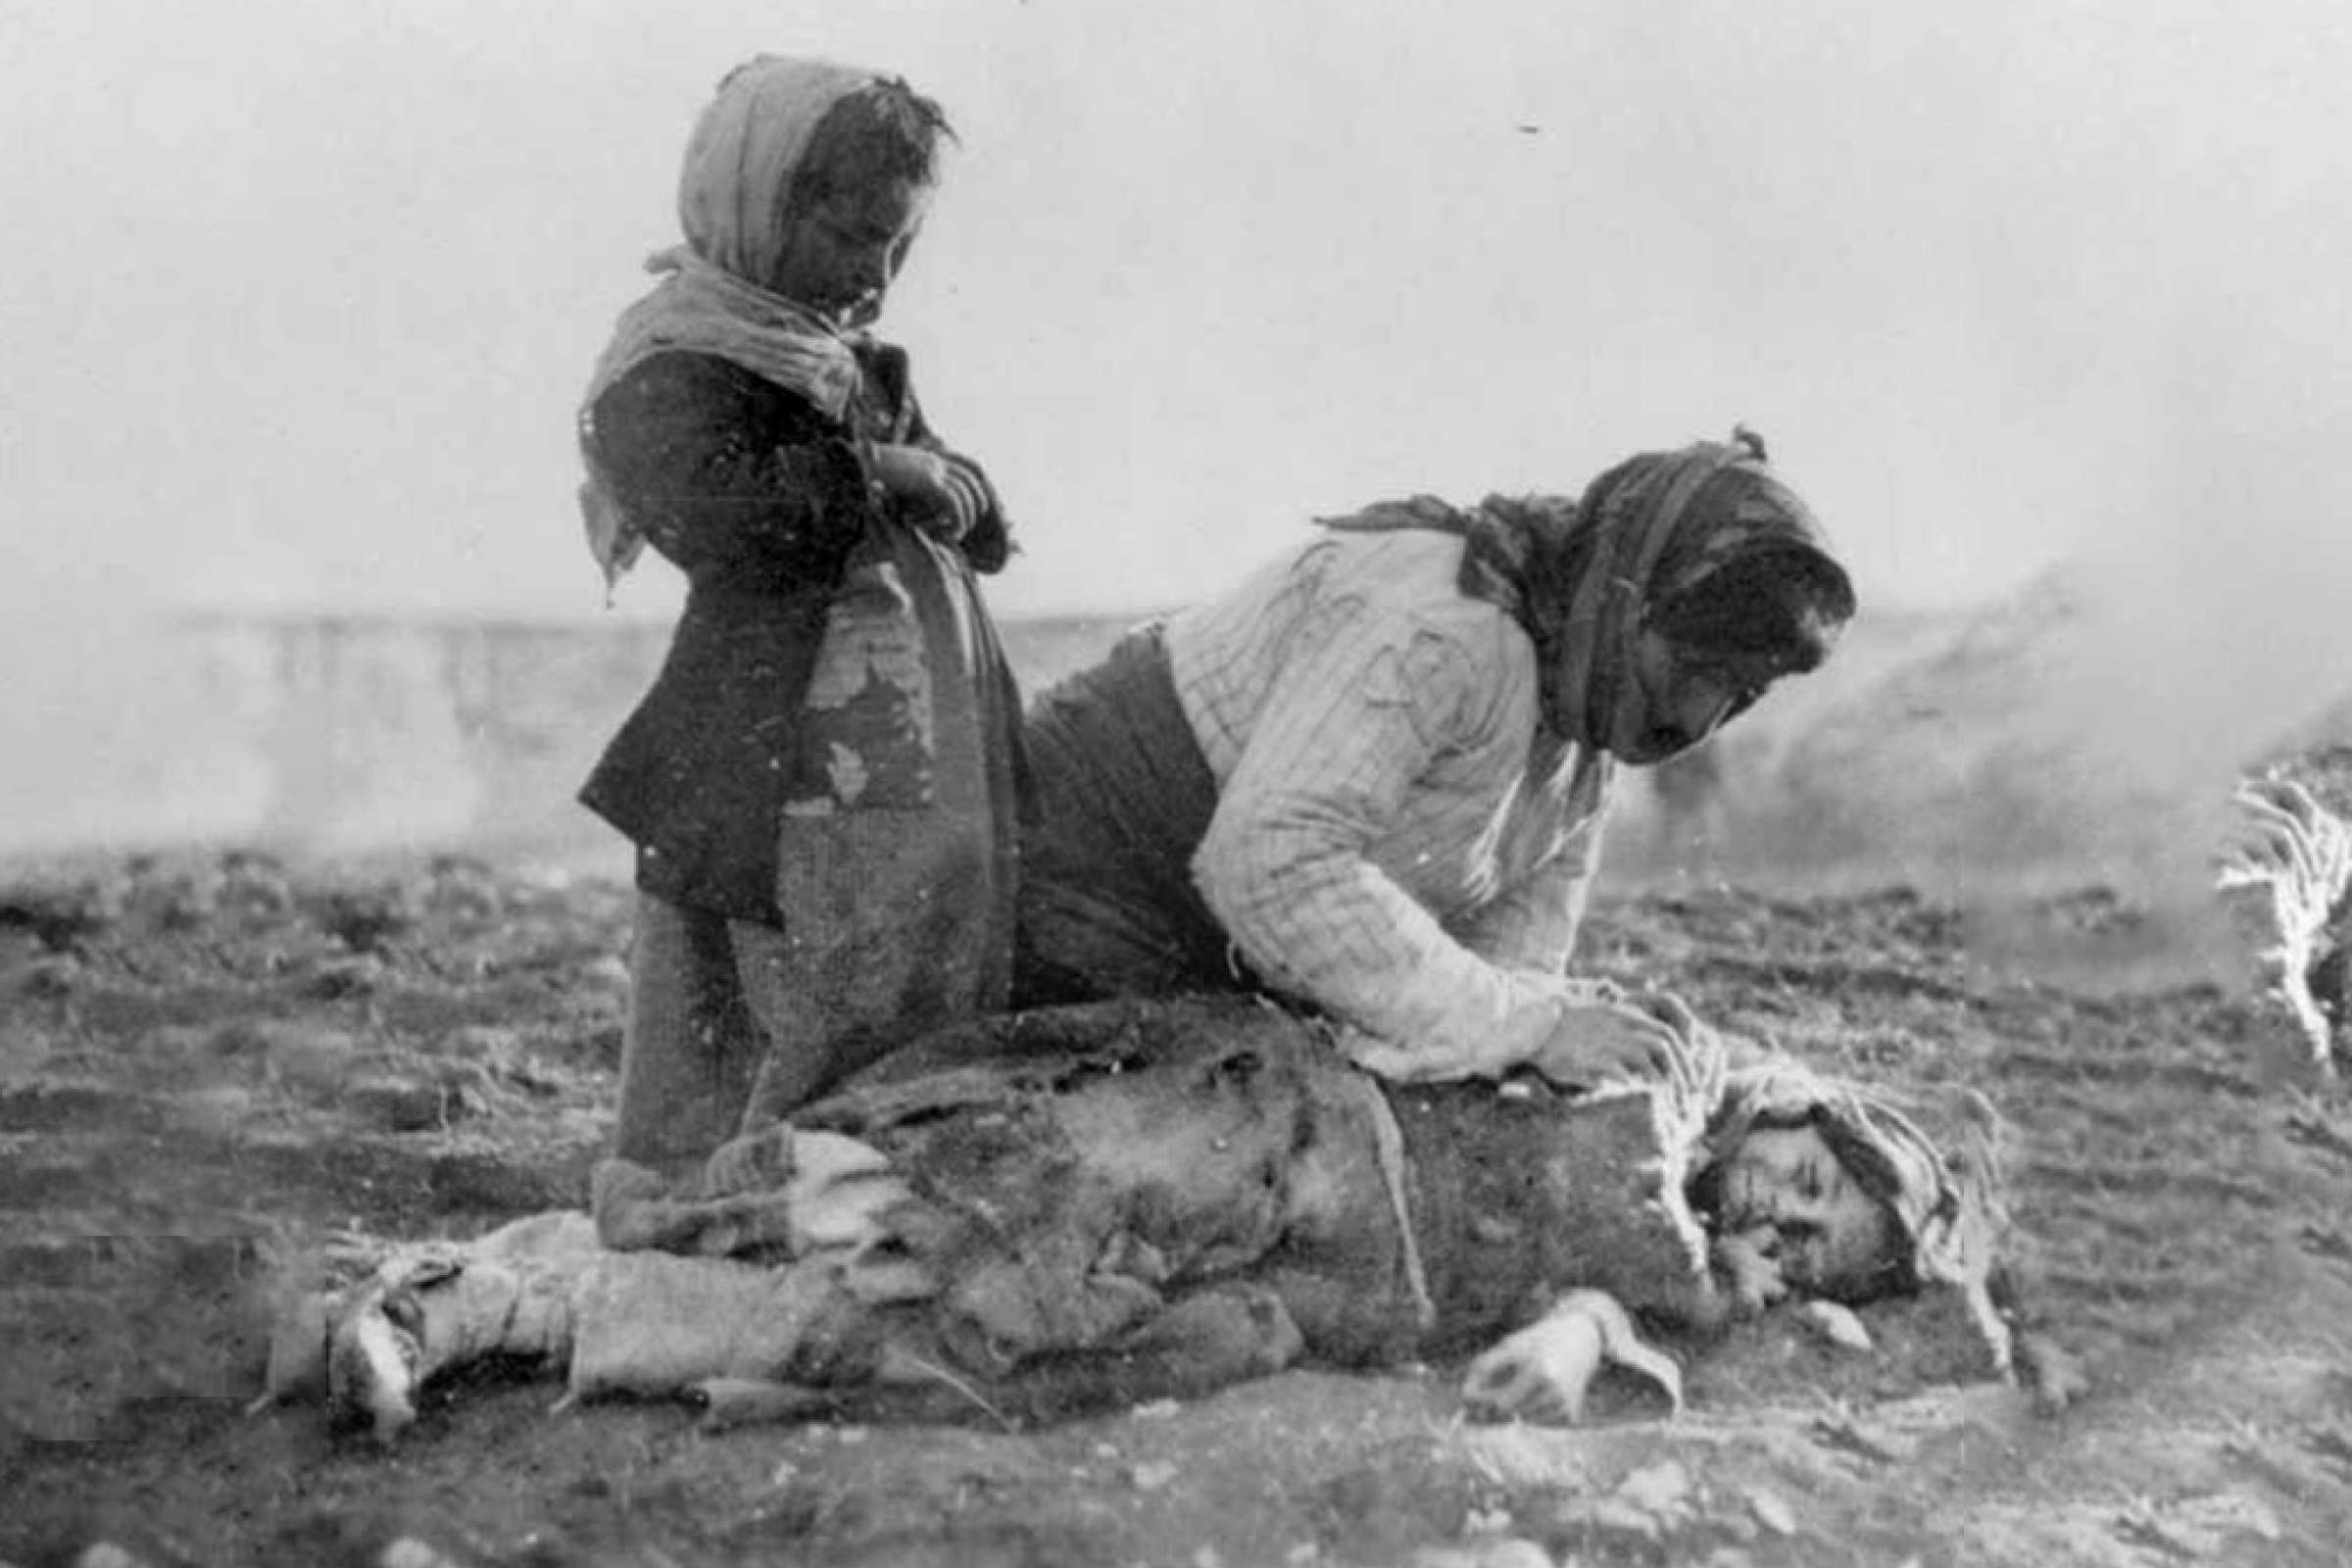 محاضرة عن الأزمة الاقتصادية والمجاعة الكبرى في إيران 1917 ـ 1919